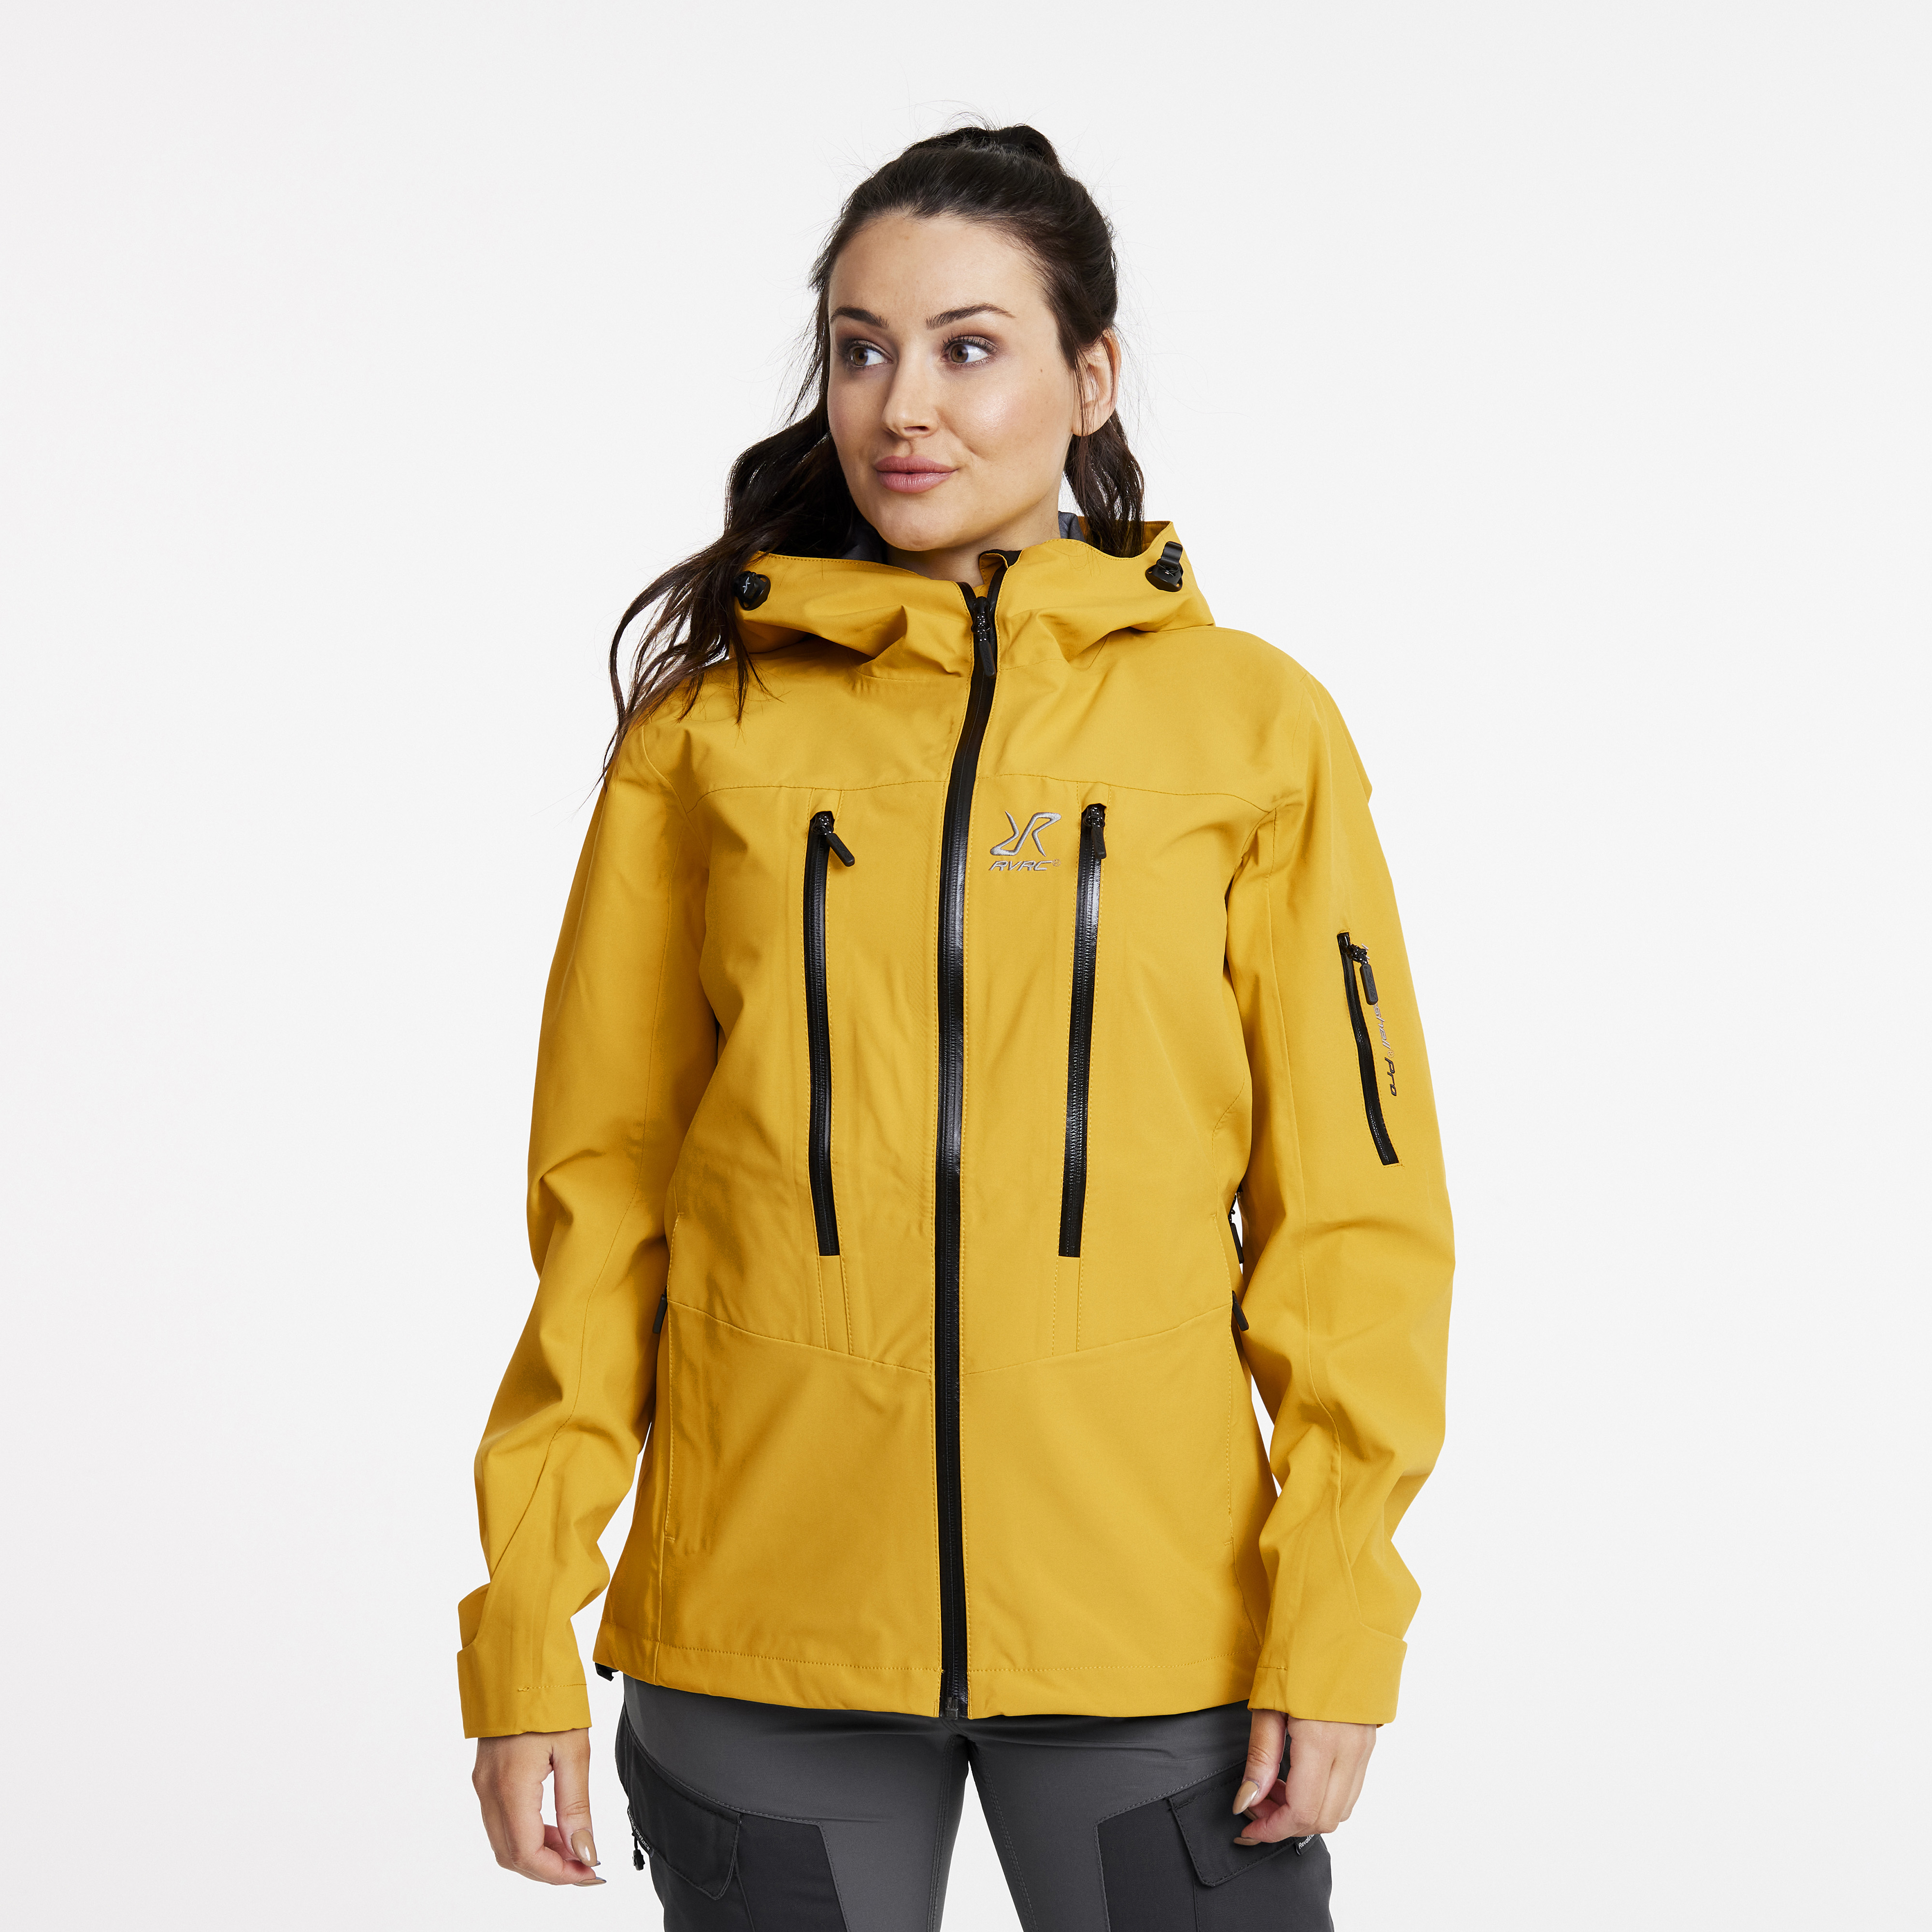 Whisper waterproof jacket for women in yellow